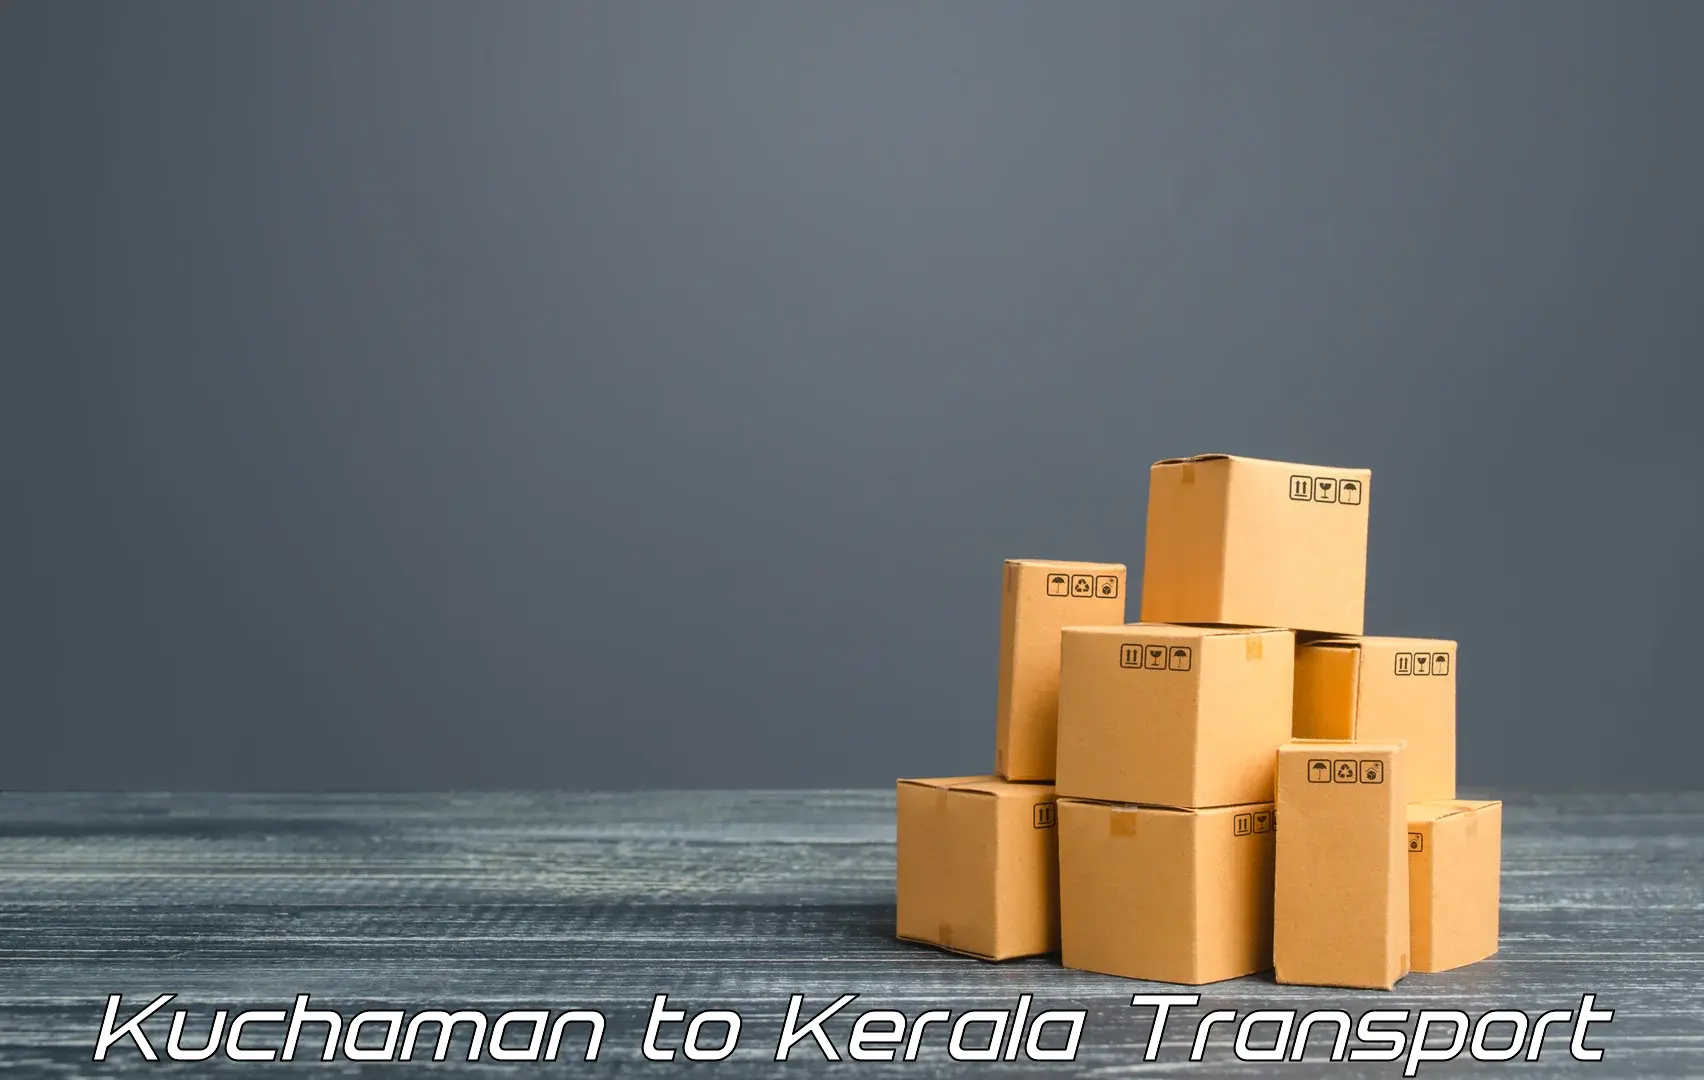 Lorry transport service Kuchaman to Kalanjoor